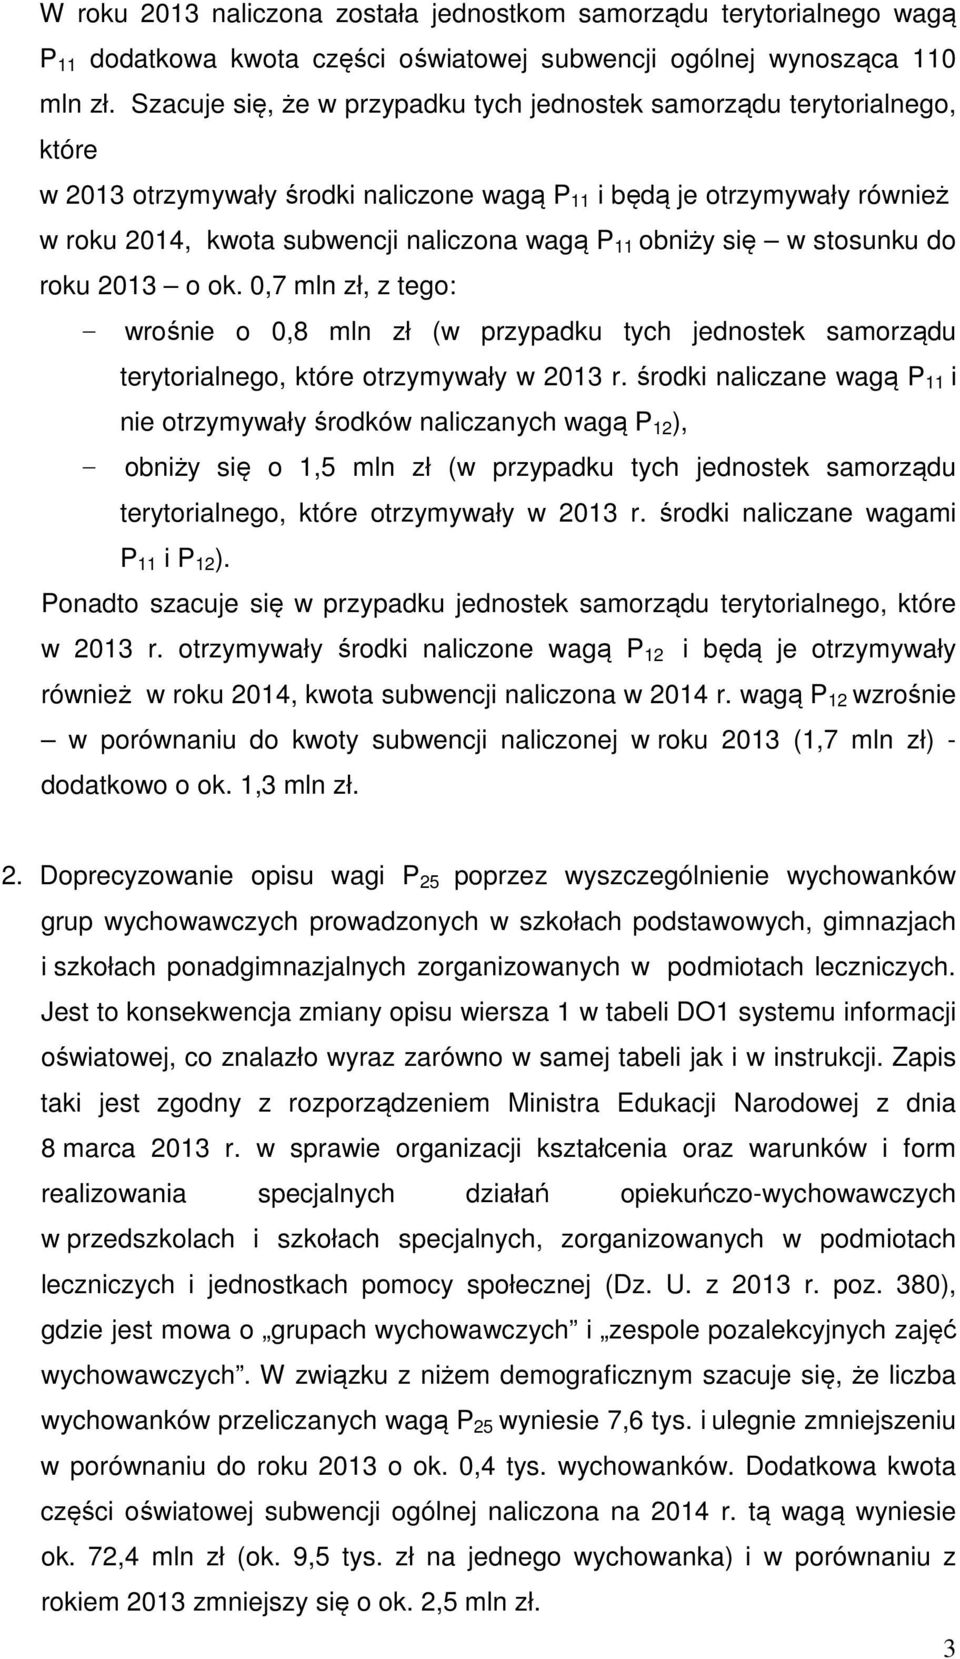 obniży się w stosunku do roku 2013 o ok. 0,7 mln zł, z tego: - wrośnie o 0,8 mln zł (w przypadku tych jednostek samorządu terytorialnego, które otrzymywały w 2013 r.